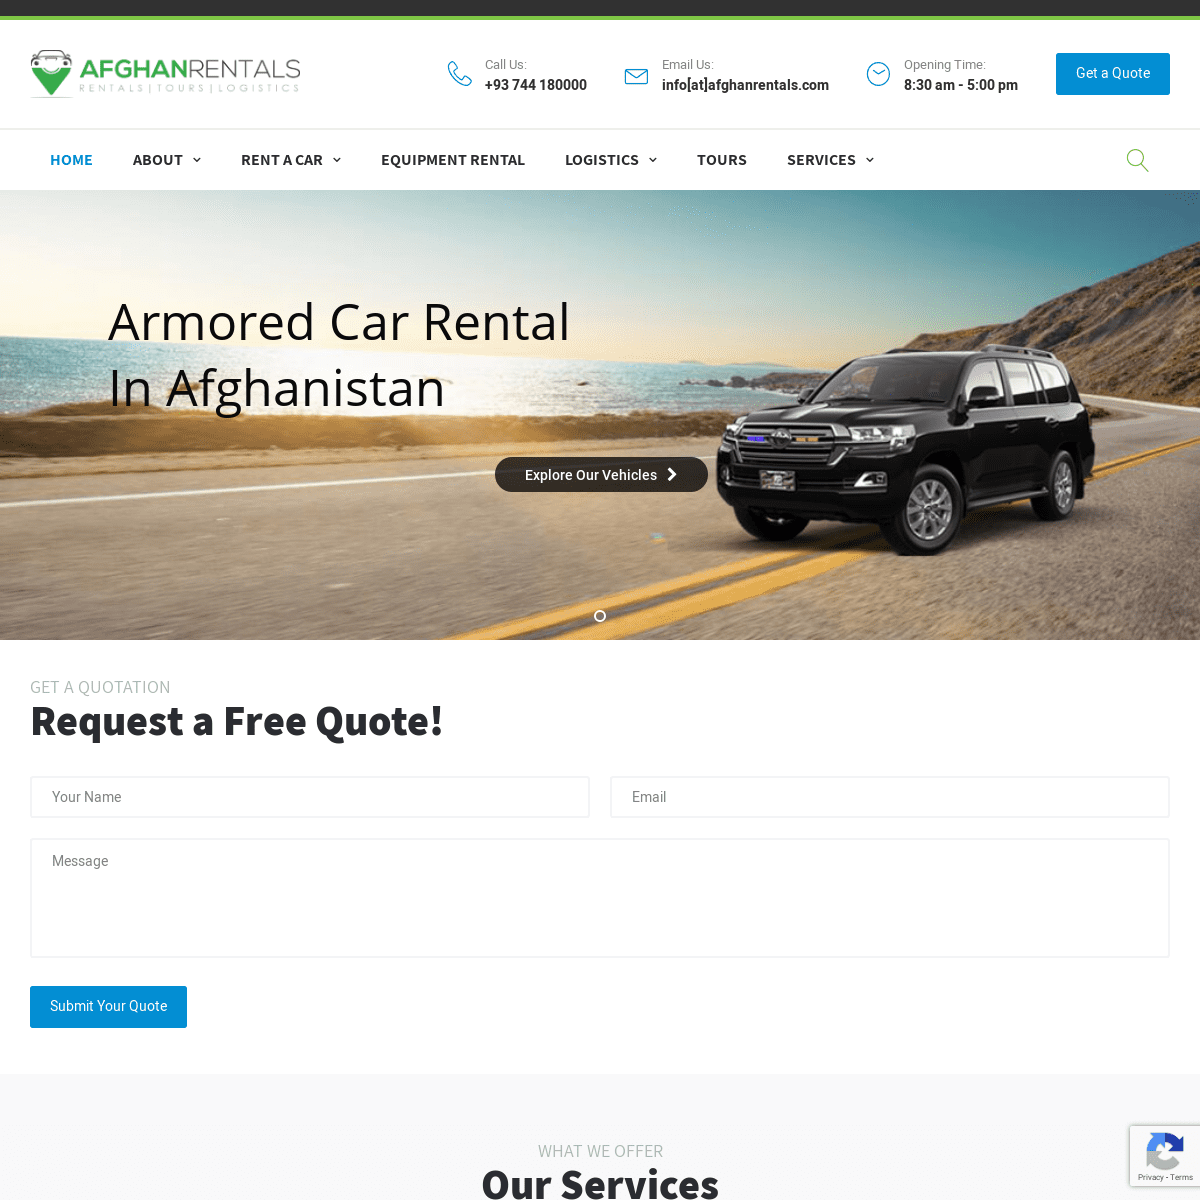 A complete backup of afghanrentals.com